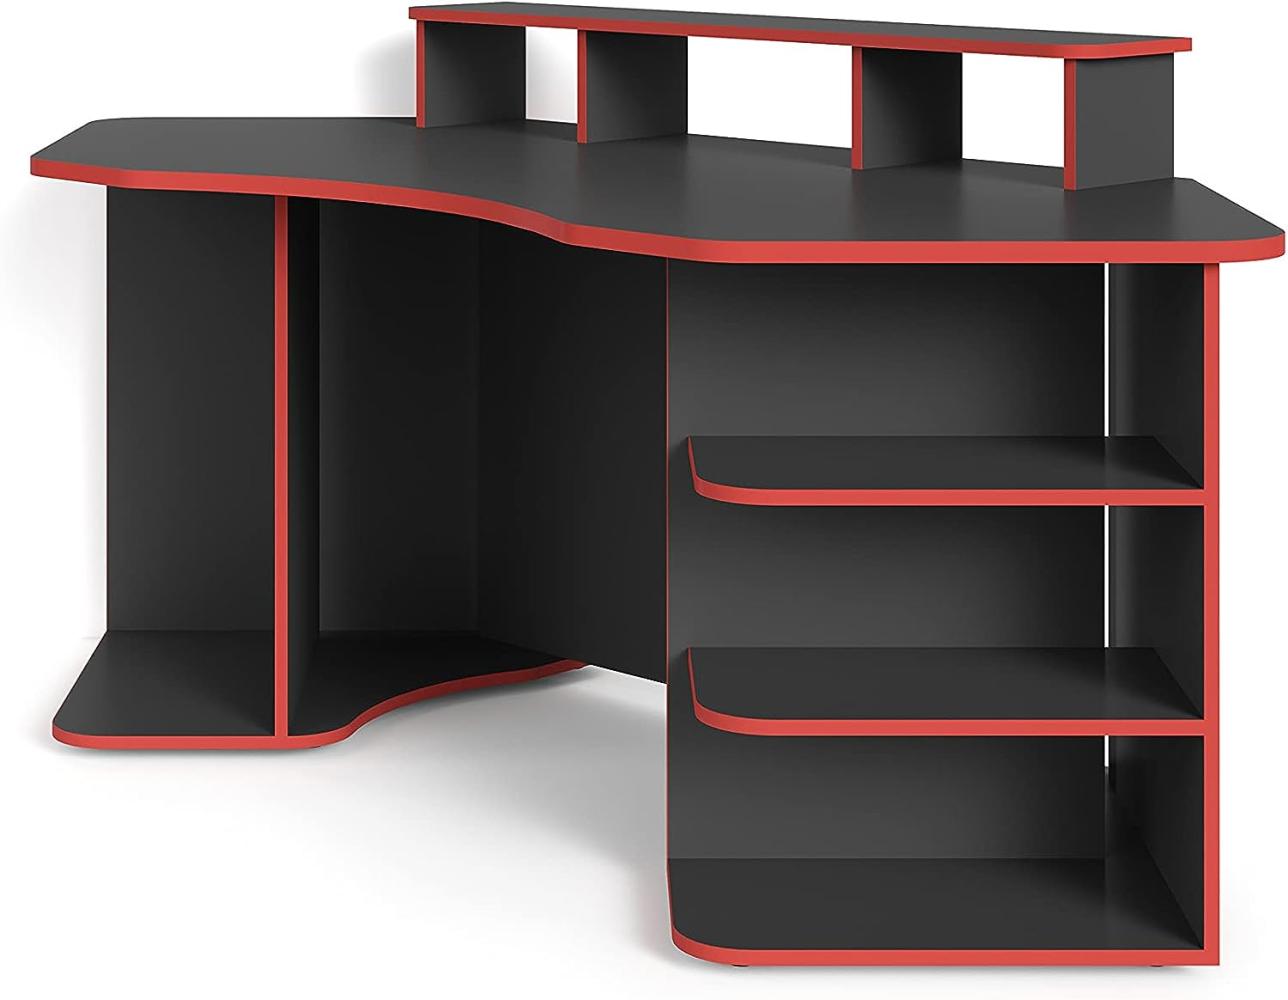 byLIVING Schreibtisch 'Thanatos' Gaming-Tisch in Anthrazit mit Kanten in Rot, Eck-Schreibtisch mit viel Stauraum und XXL Tischplatte, 198x76x85cm (BxHxT) Bild 1